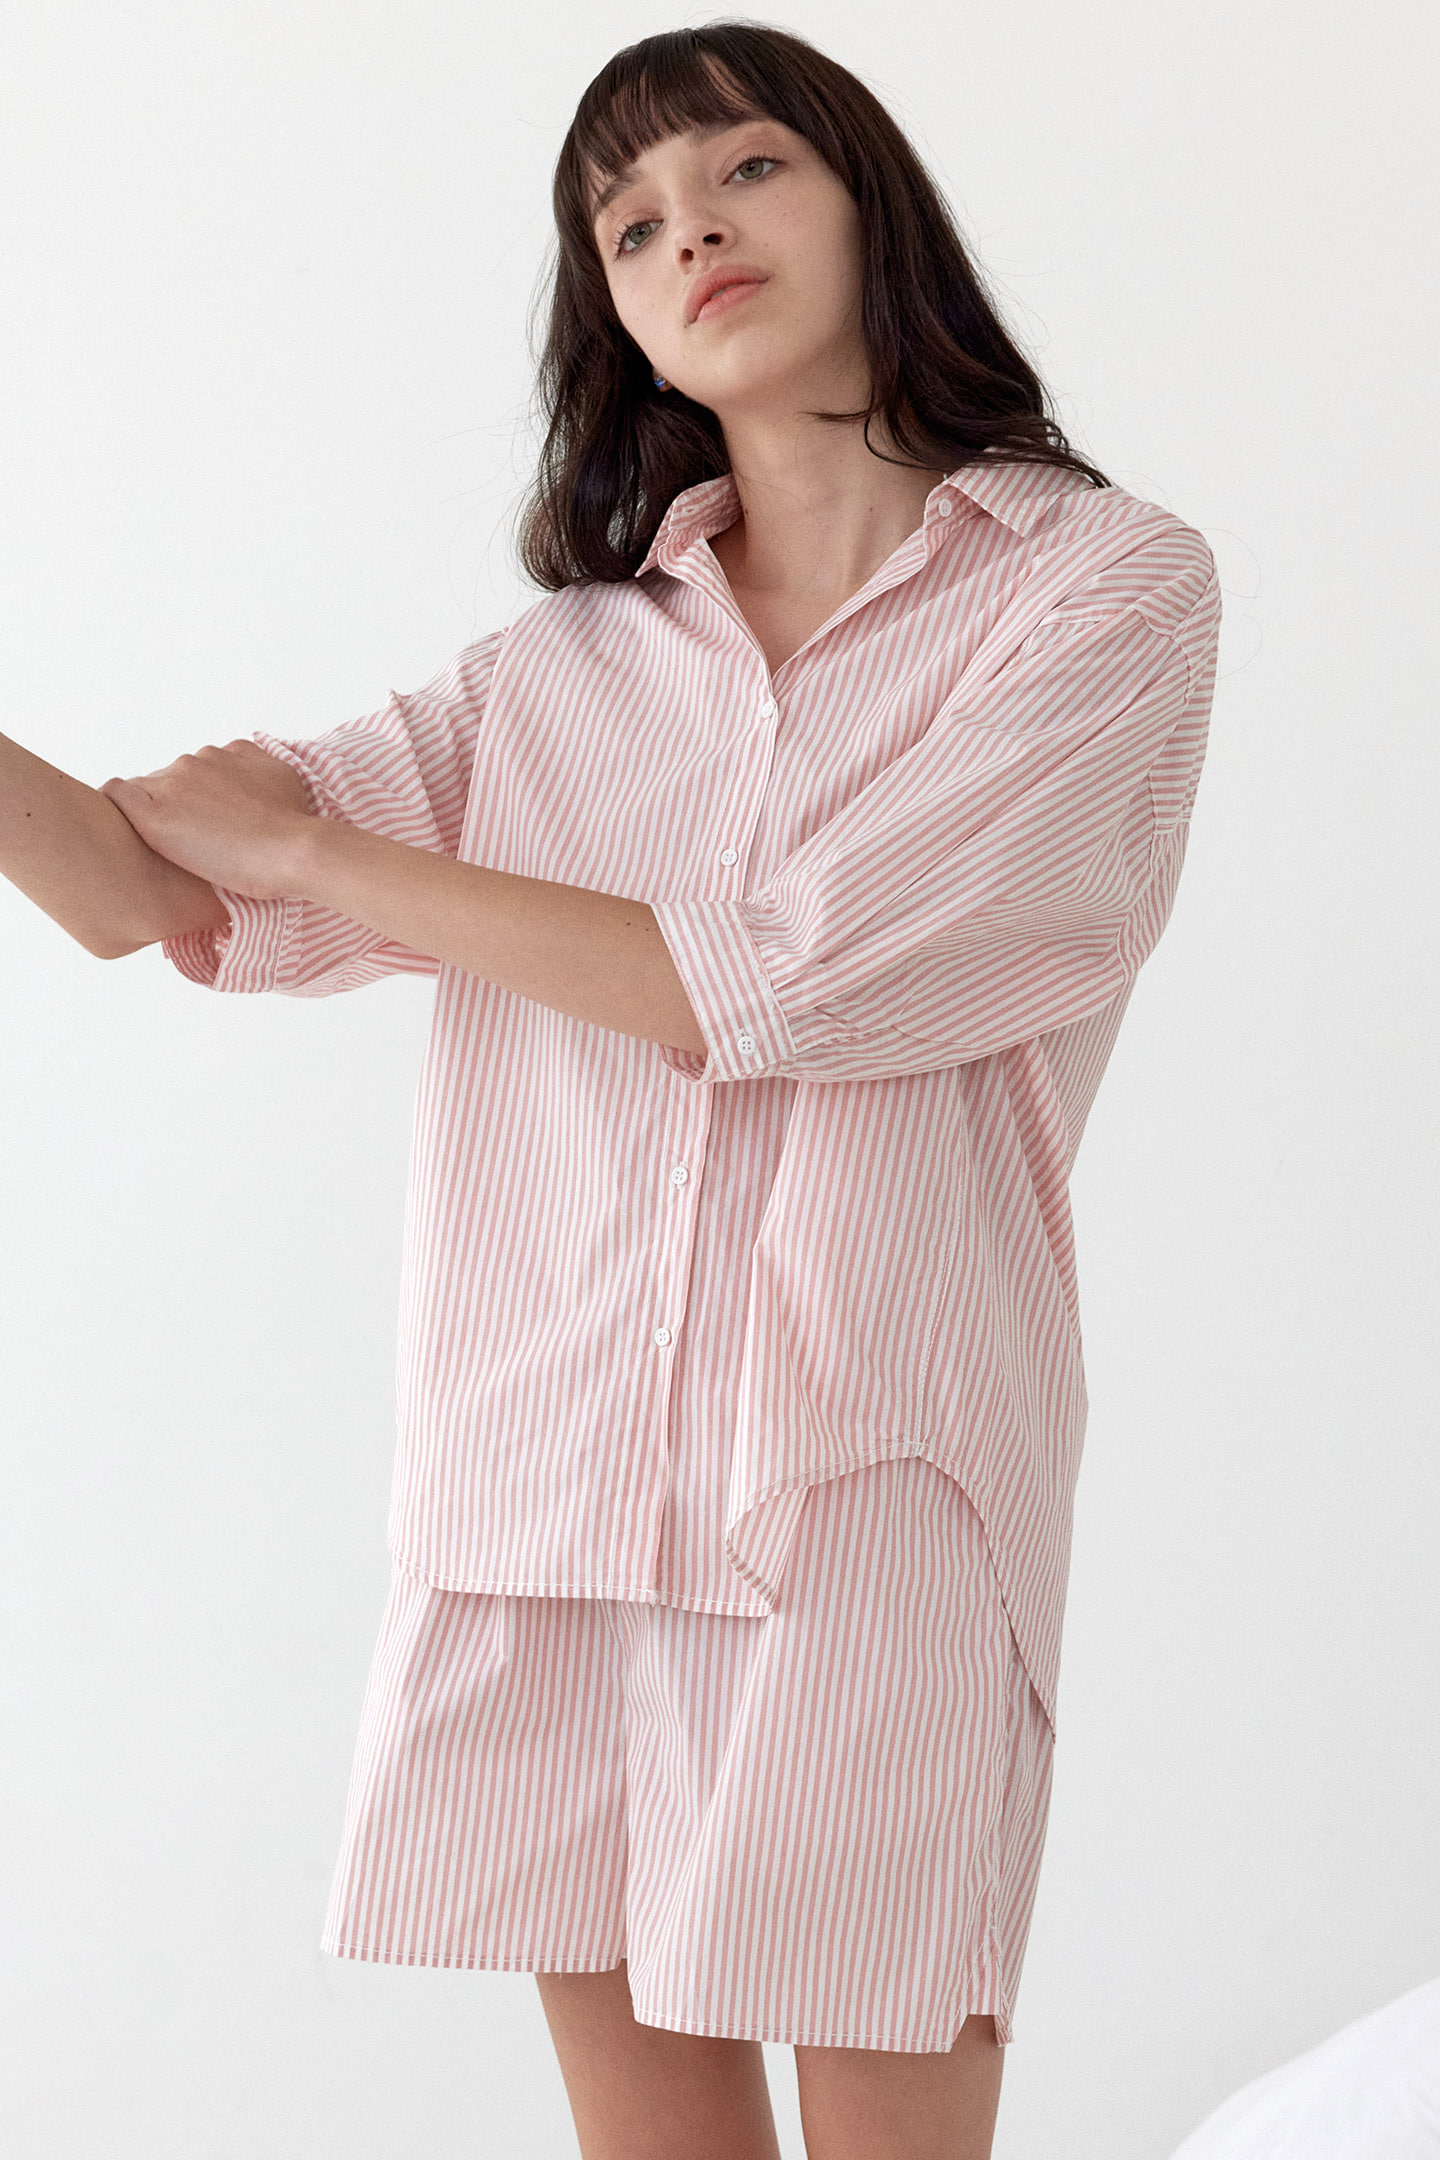 코지 스트라이프 반팔 여름 여성 잠옷 세트 반바지 셔츠 파자마 핑크